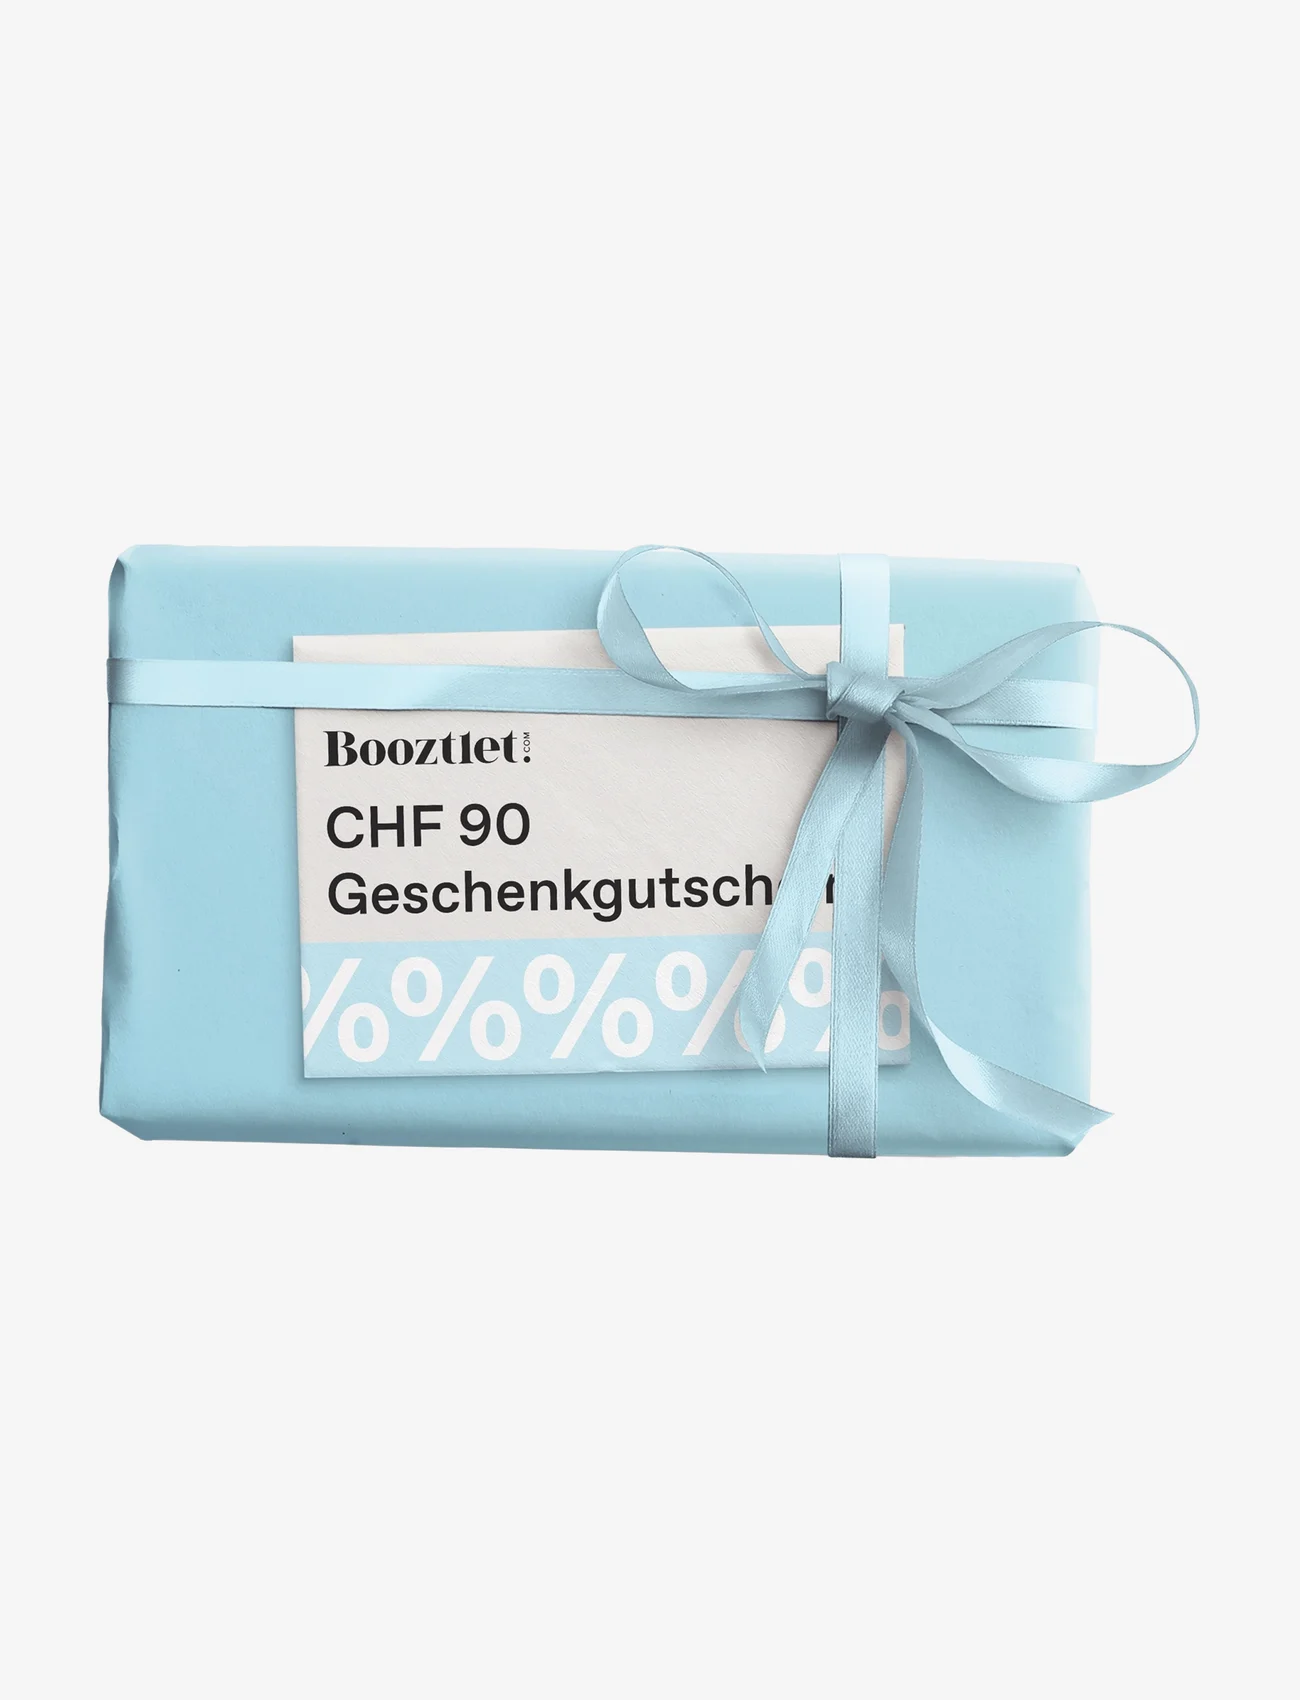 Booztlet Gift - Booztlet Gift Card - geschenkgutscheine - chf 90 - 0